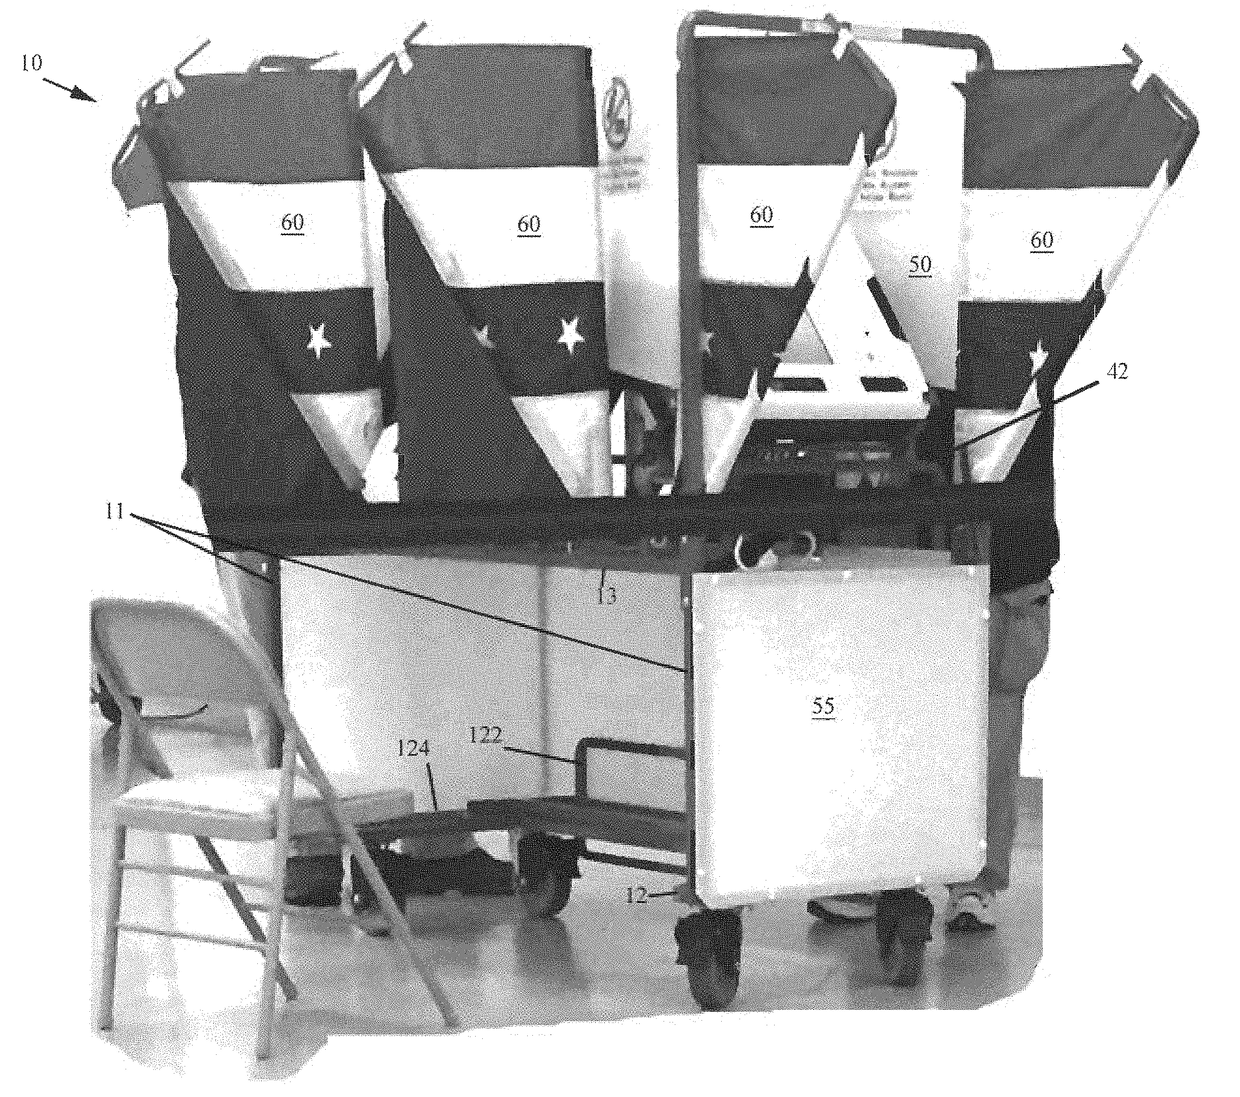 Voting multi-cart